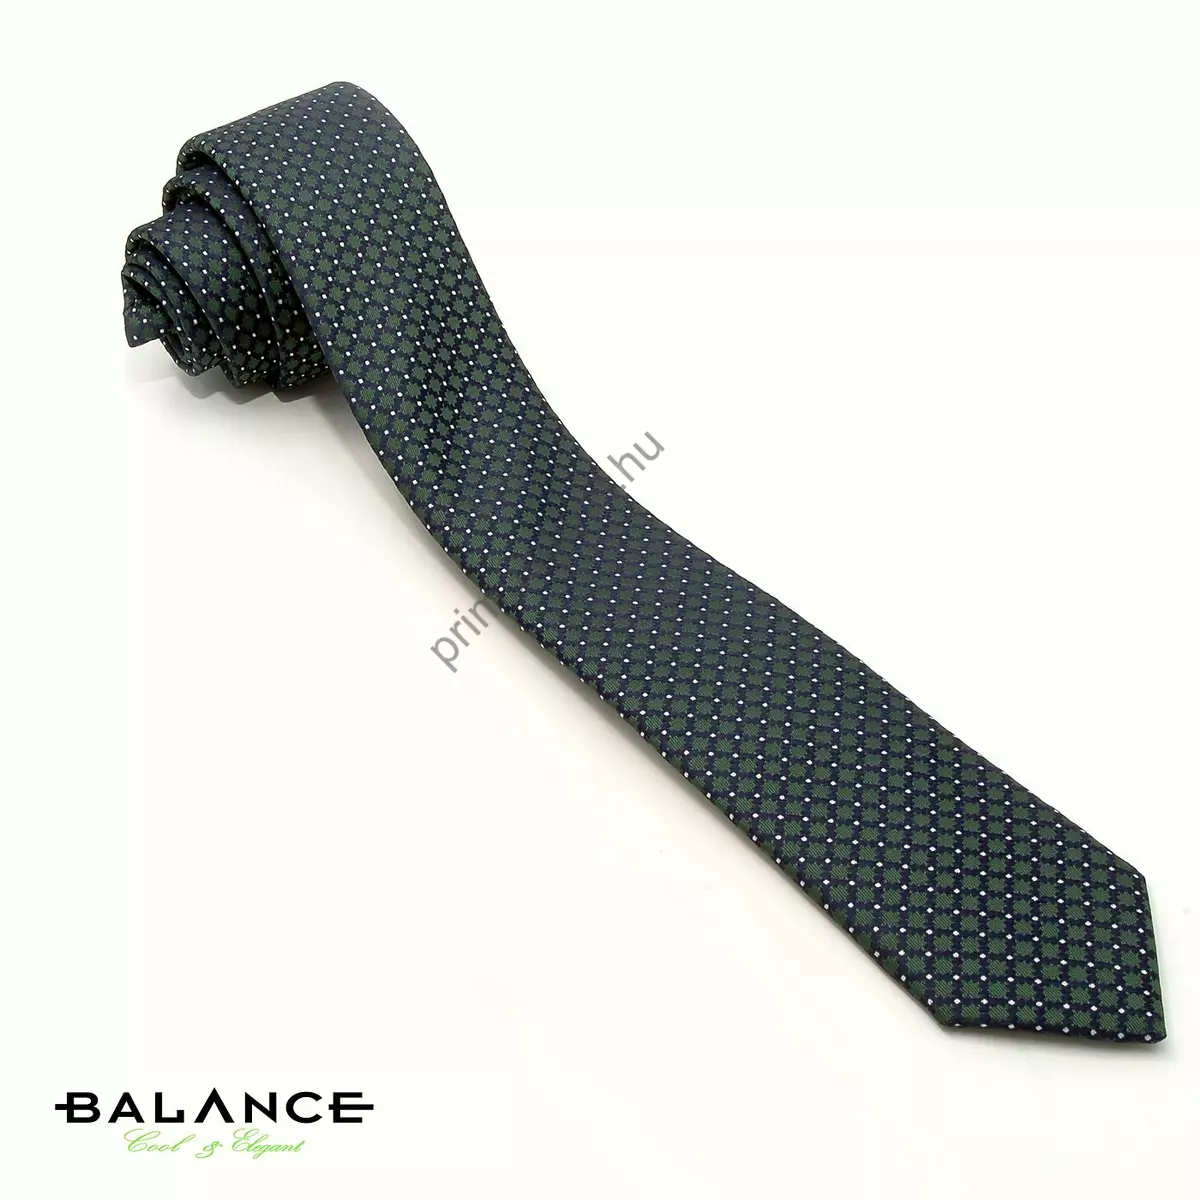 Balance apró fehér pöttyös, anyagában szövött sötétkék-zöld mintás színjátszó keskeny selyem nyakkendő